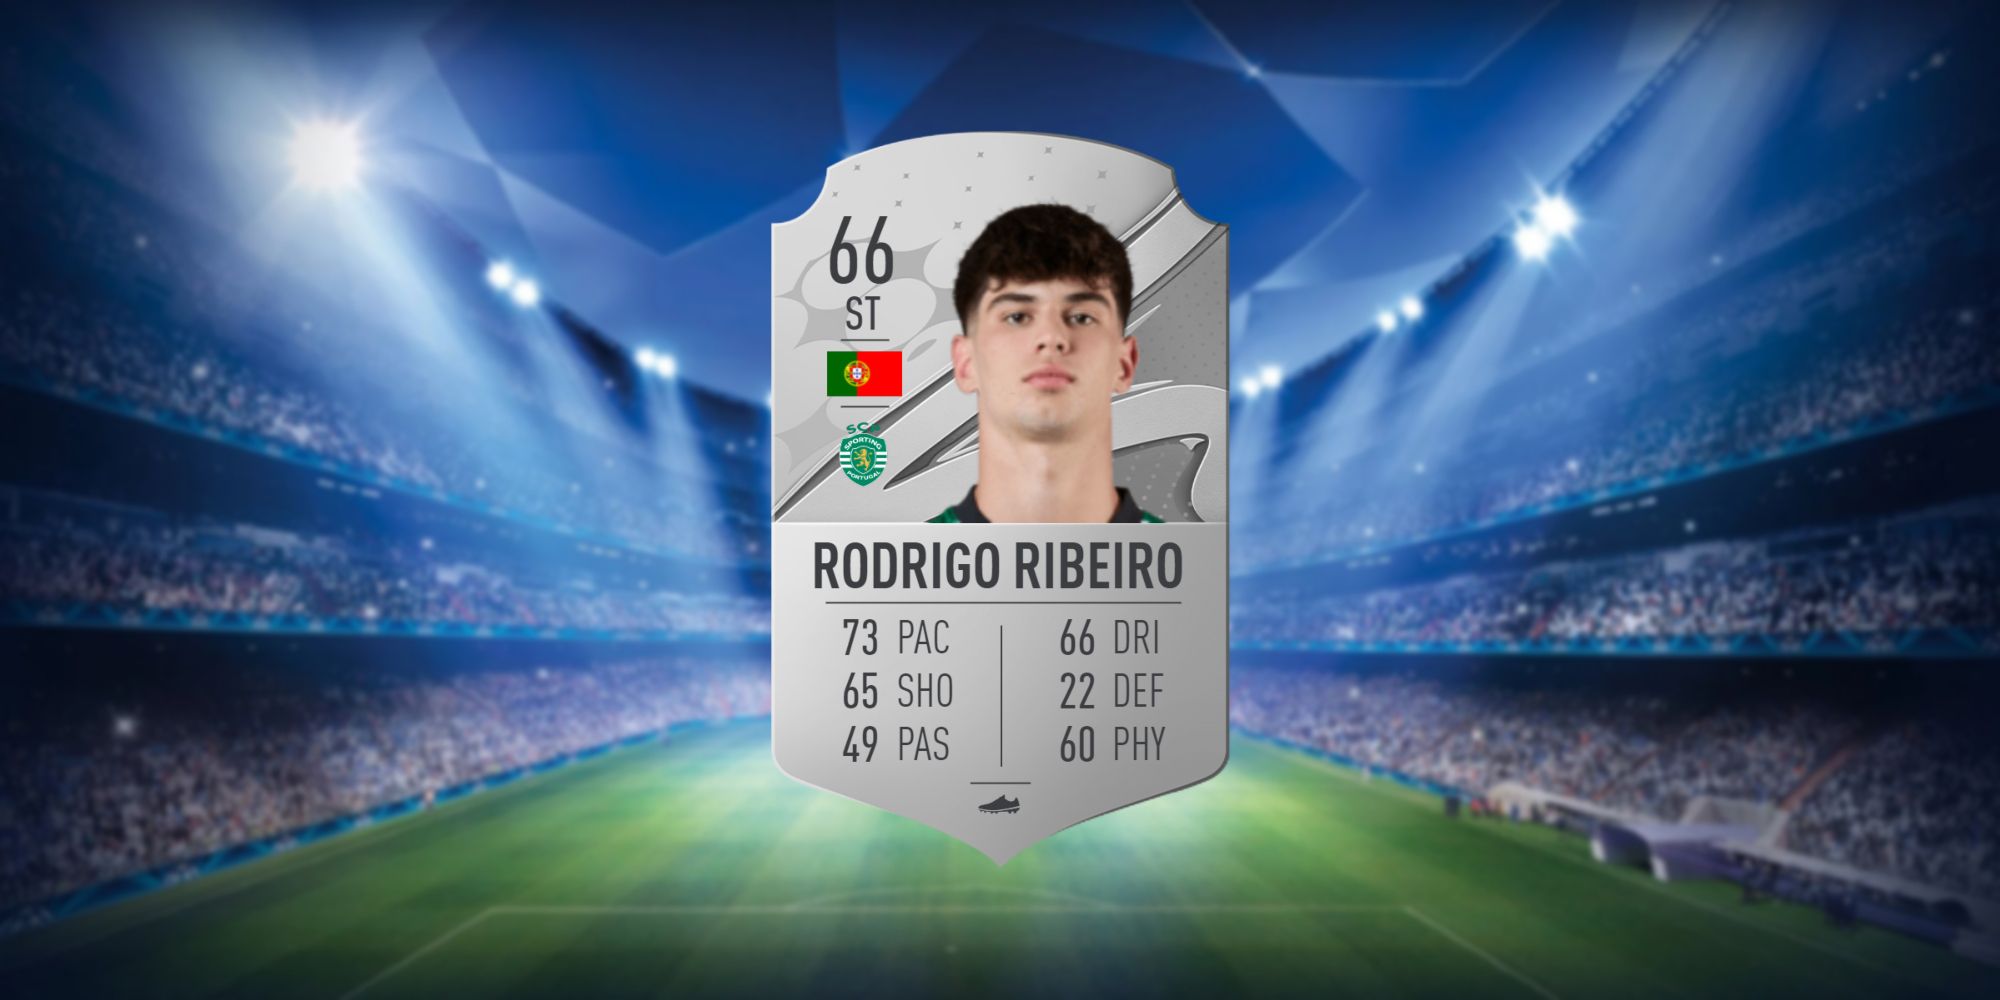 An image of Rodrigo Ribeiro's FIFA 23 Card